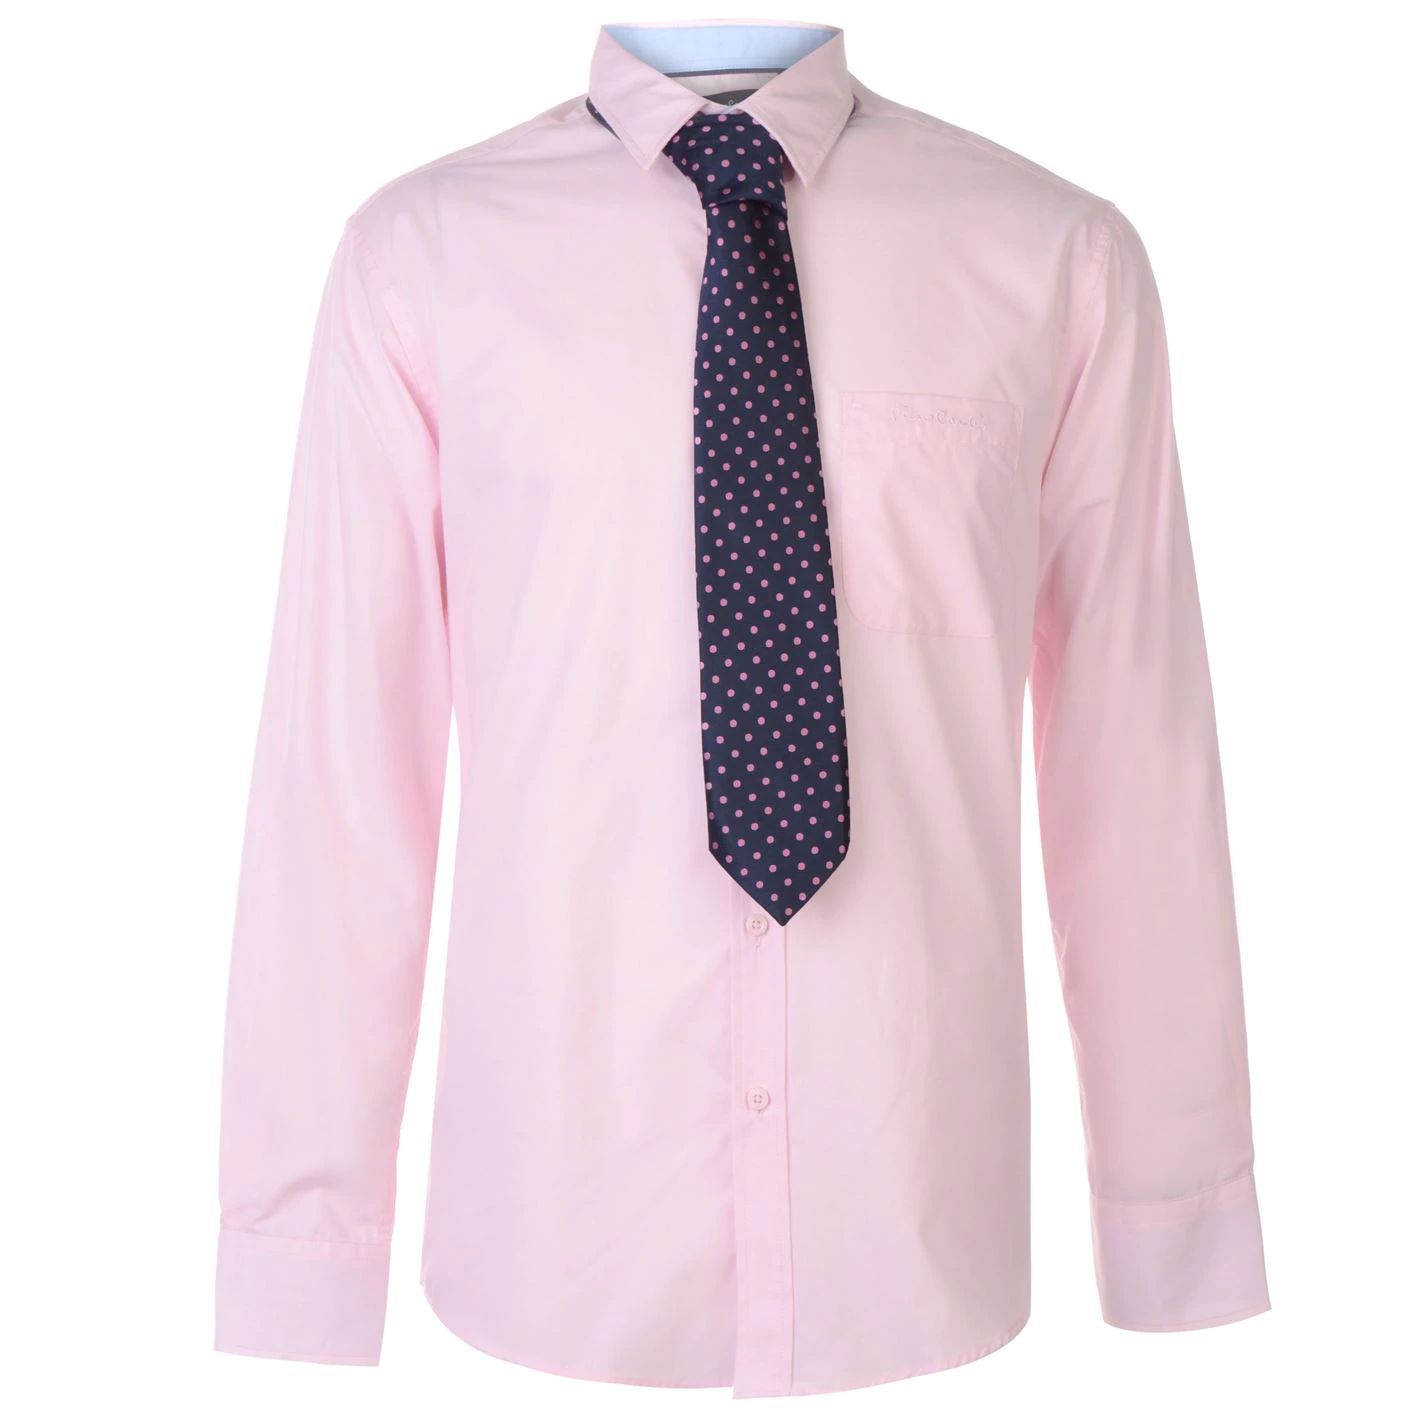 pánská košile s kravatou PIERRE CARDIN - PINK/NAVY - XL